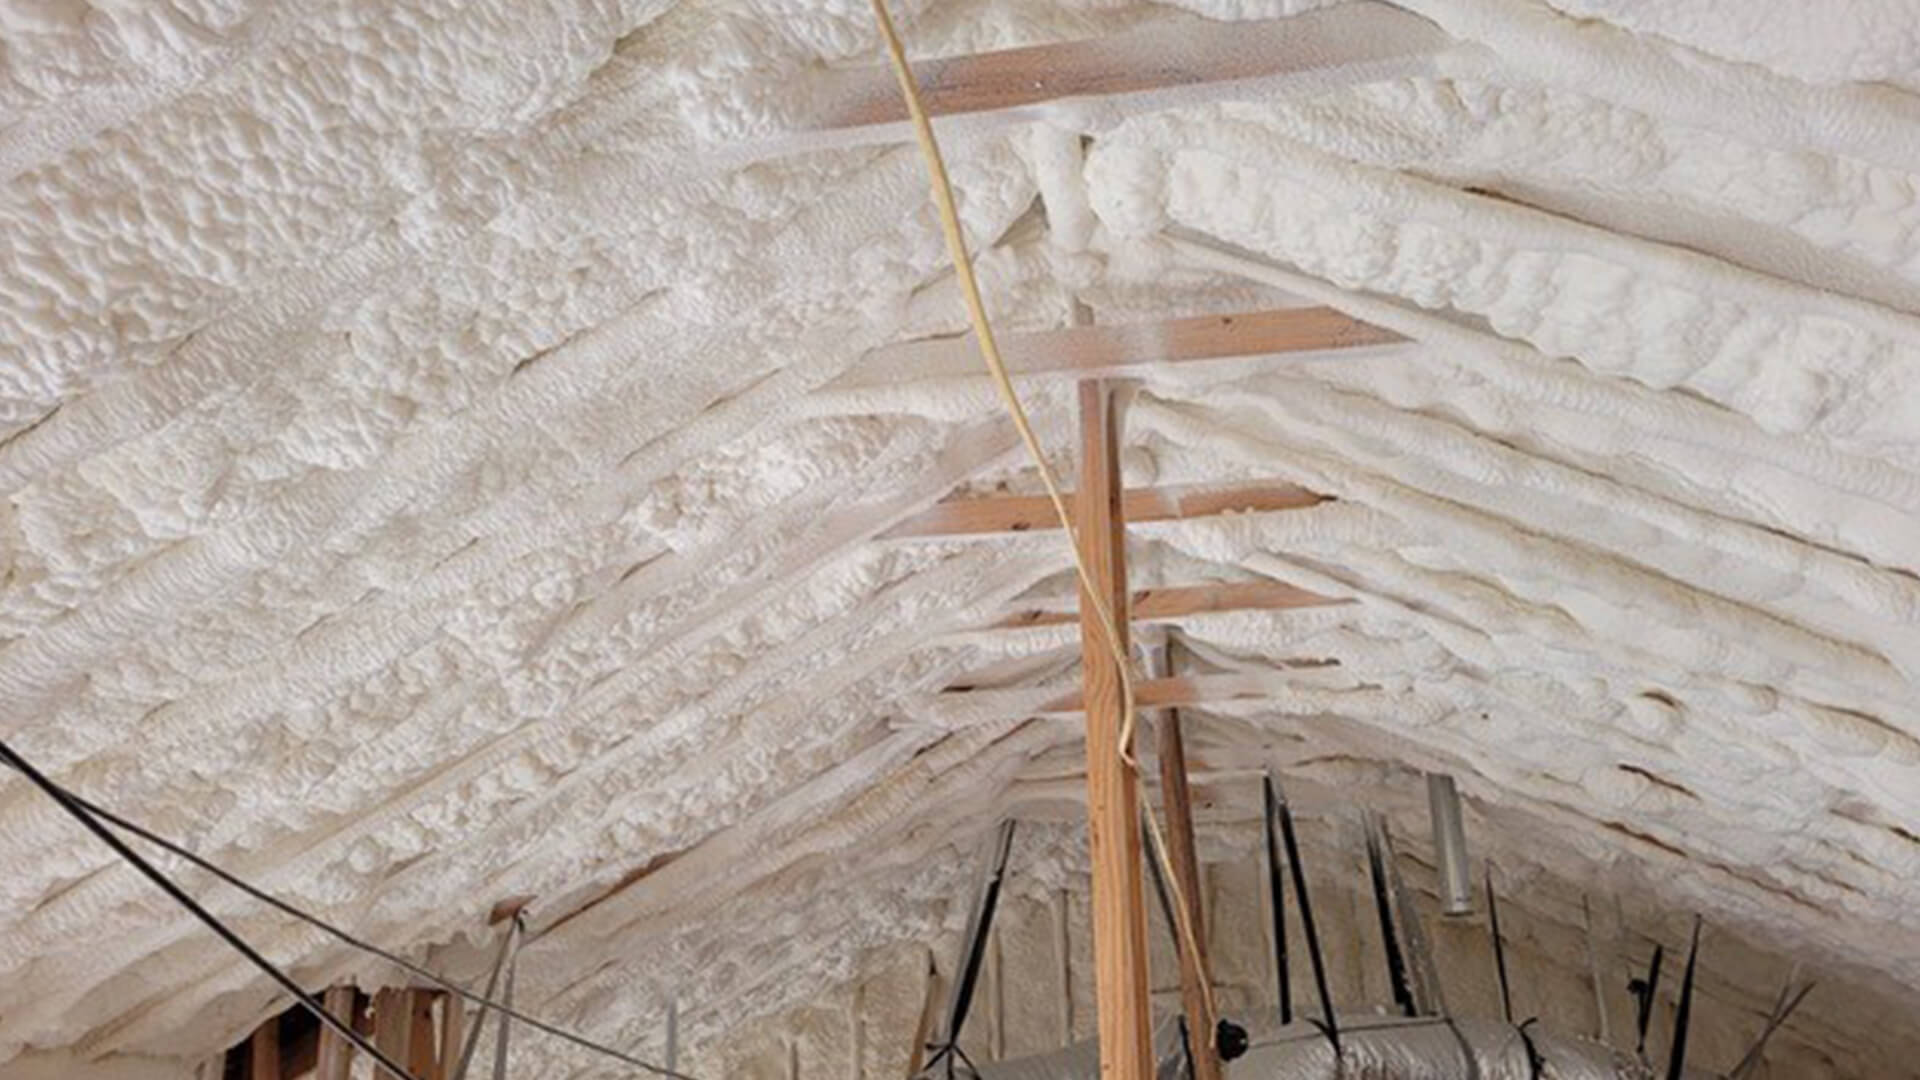 North Texas garage insulation